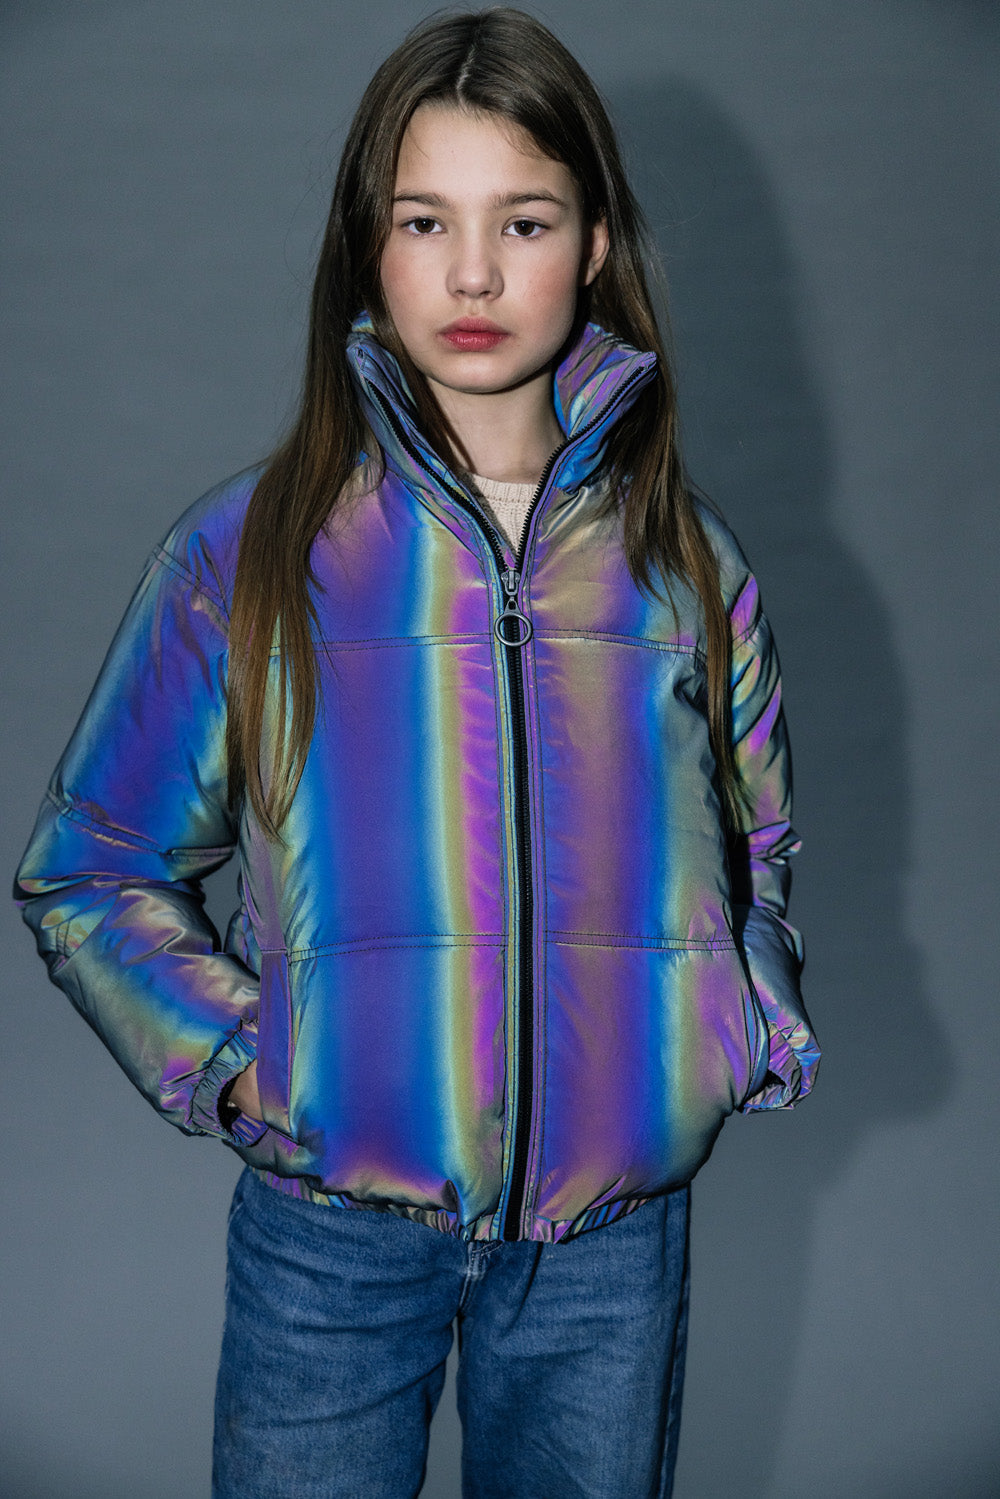 Meisjes Reflective Outerwear Jacket van LOOXS 10sixteen in de kleur refective in maat 176.